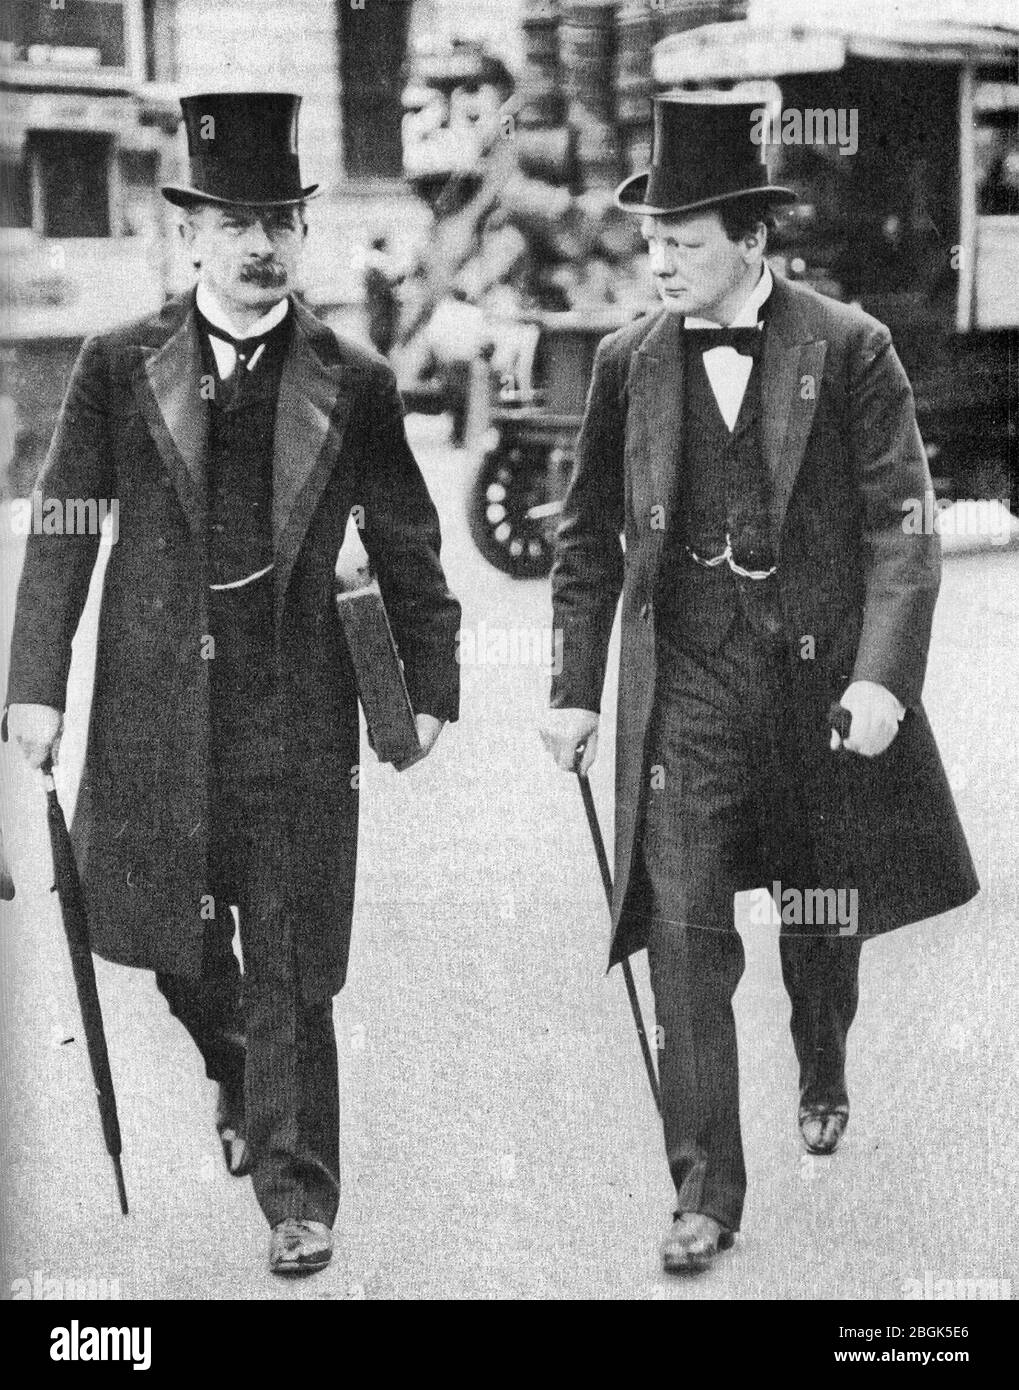 Les « terribles jumeaux » David Lloyd George et Winston Churchill en 1907, au plus fort de leur « phase radicale » en tant que réformateurs sociaux. Banque D'Images